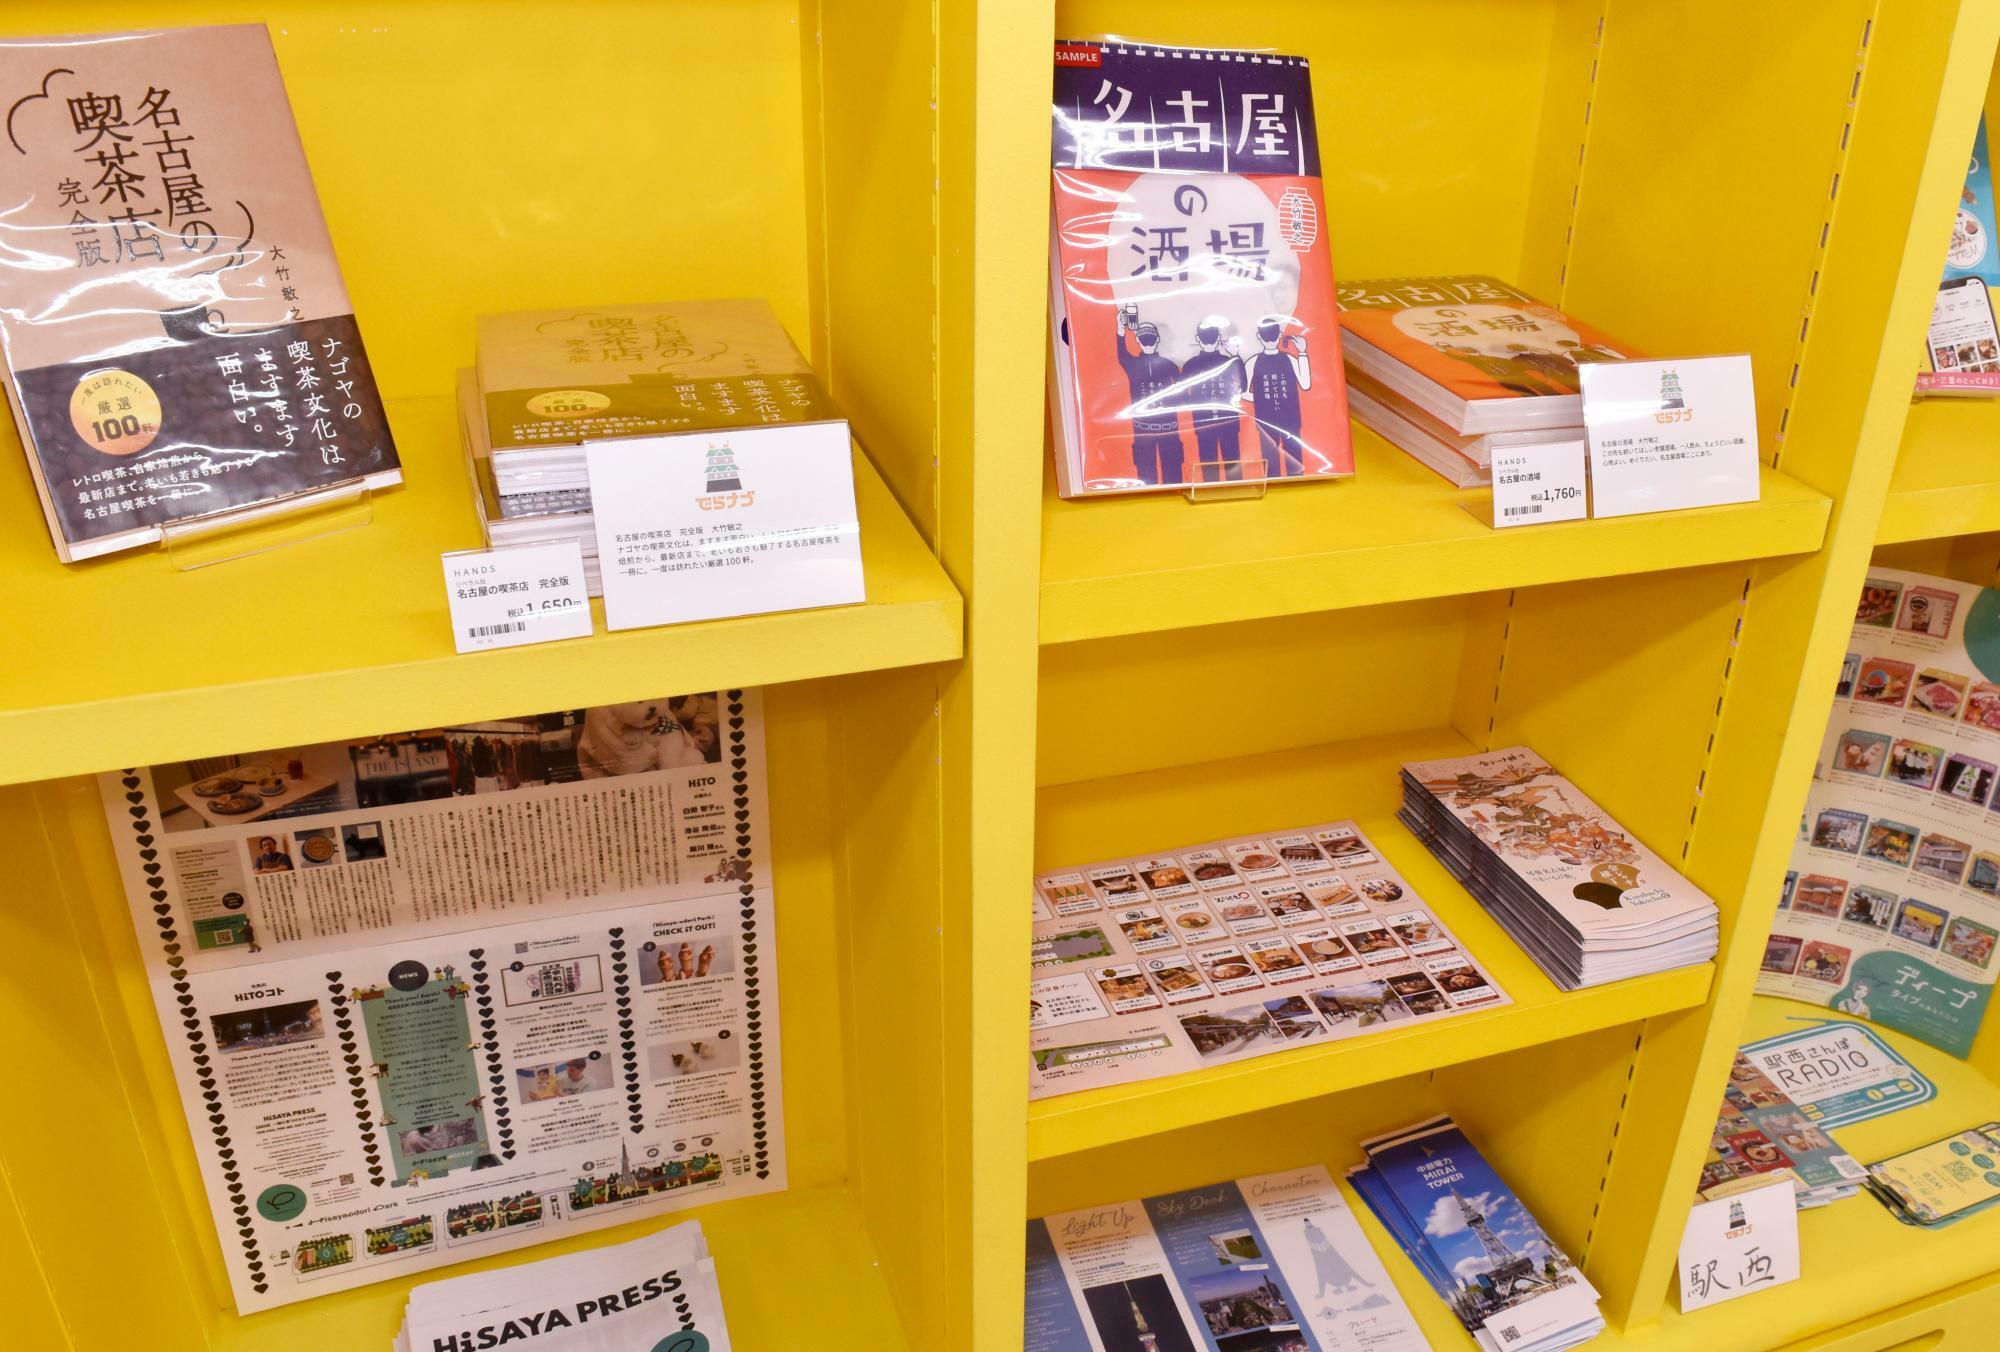 情報発信型のコーナーには名古屋グルメのガイドブック（筆者の著作もあり。多謝!）や、市内各区でつくられているフリーペーパーなども集めている